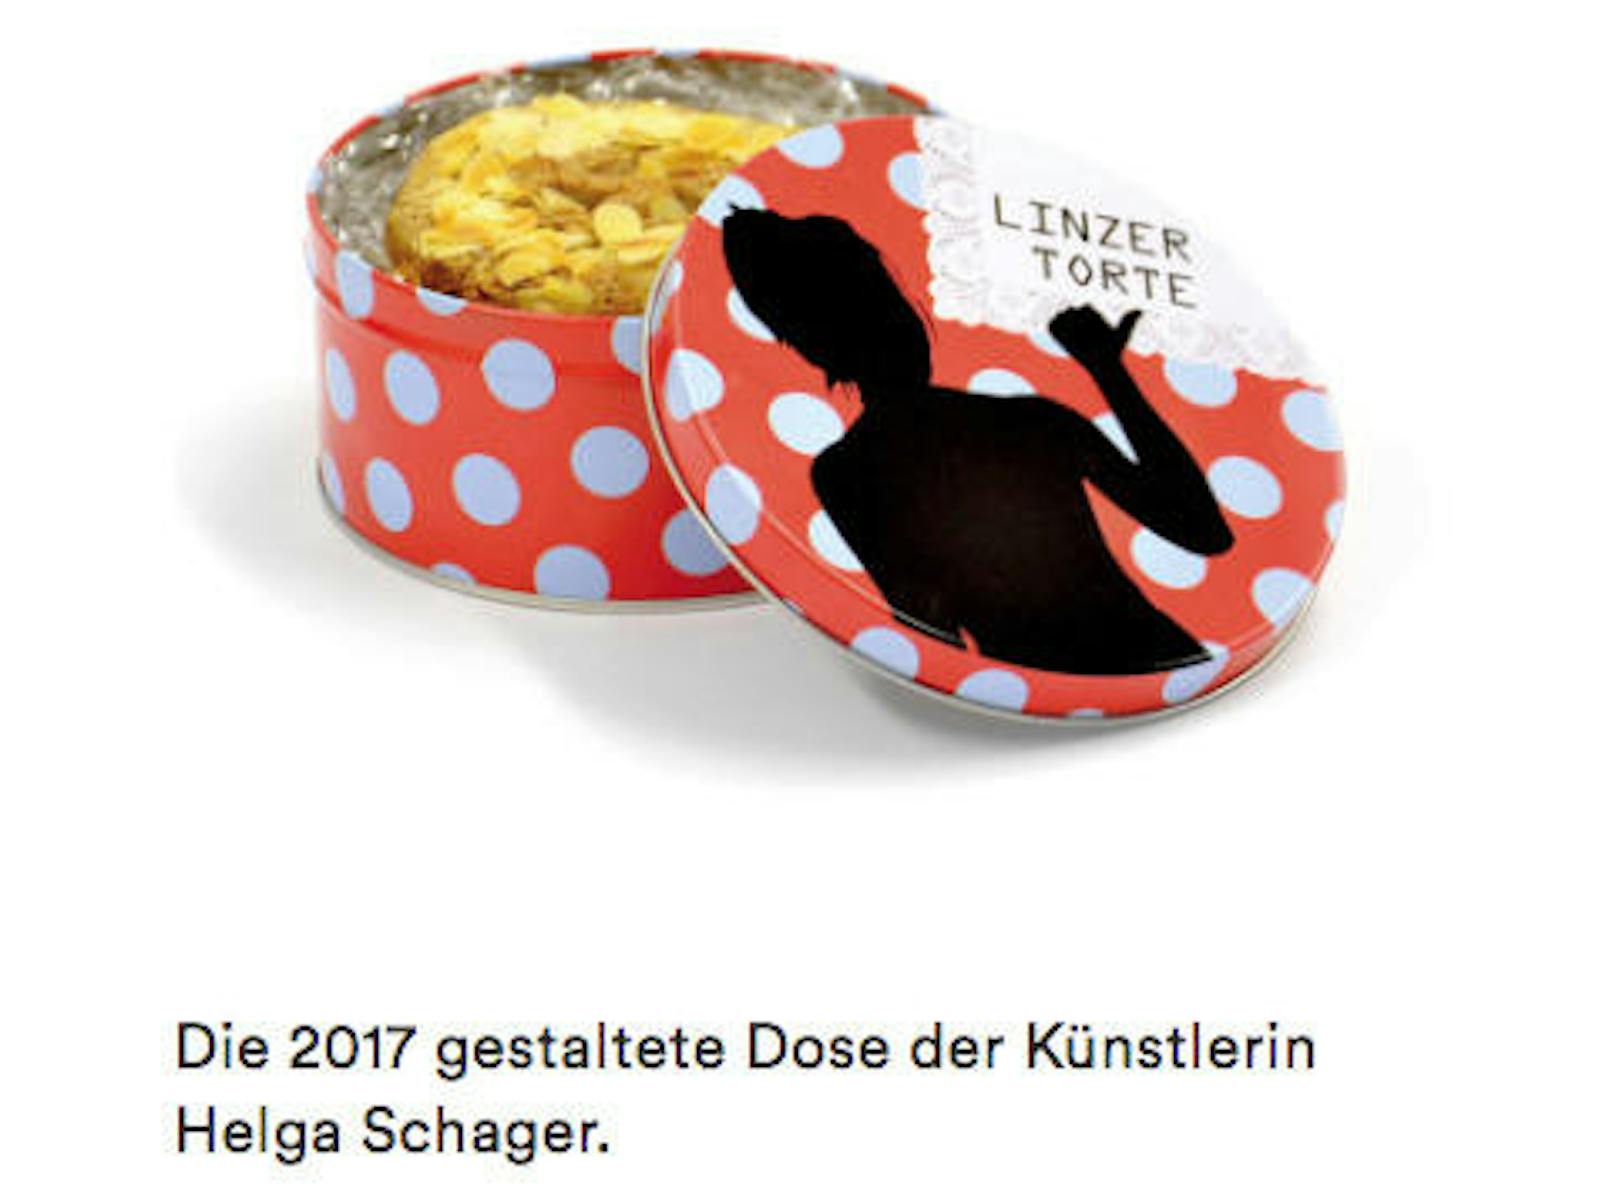 Die Linzer Torte, Edition 2017